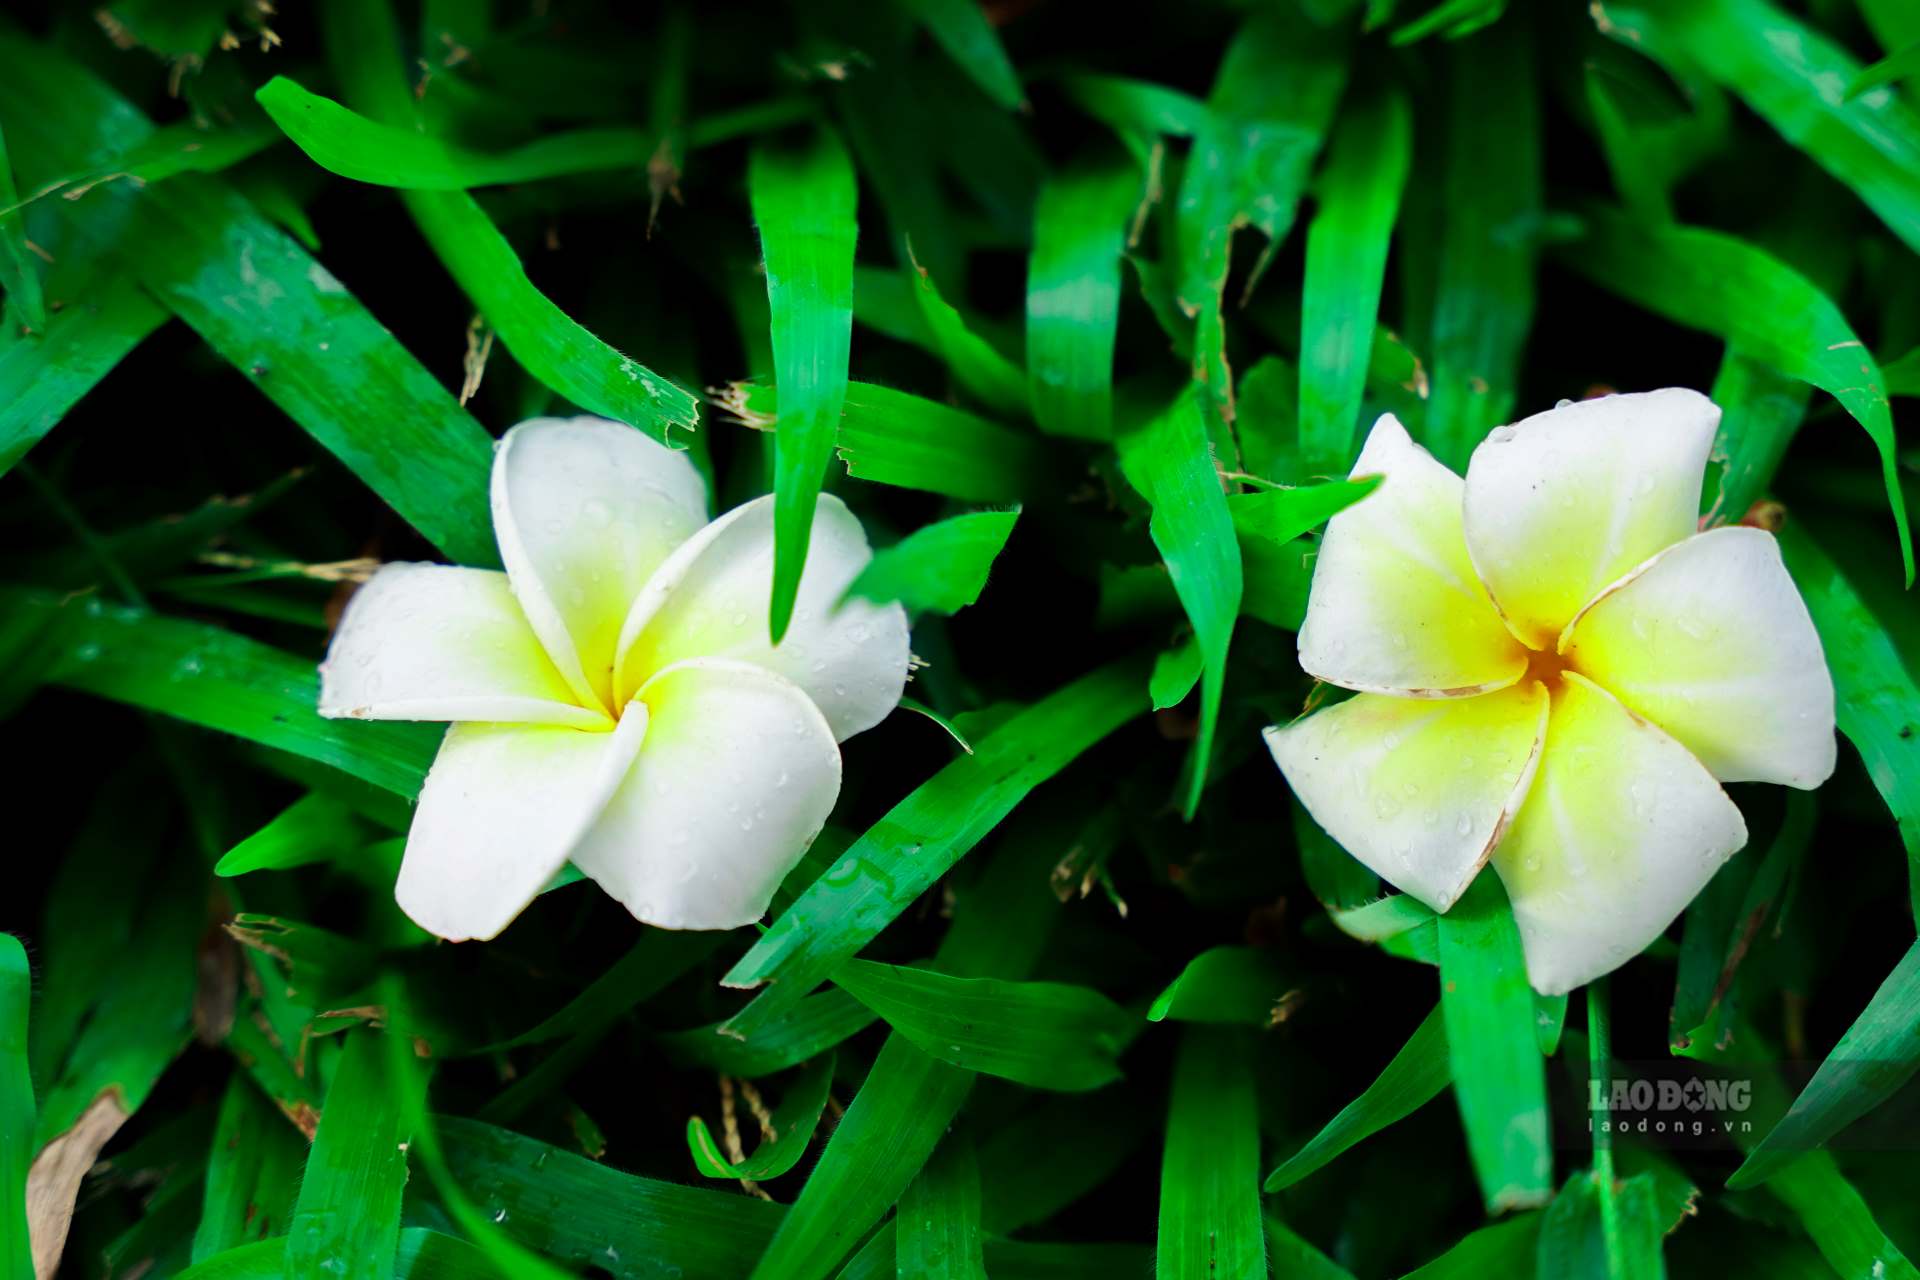 Từ lâu sứ trắng là loại cây hoa được ưa chuộng và trồng phổ biến ở nhiều nơi trên cả nước. Loại cây hoa này đã trở thành biểu tượng ở một số công trình như đình, đền ngày xưa và nay chúng được trồng ngày càng nhiều ở các khu vực công cộng.